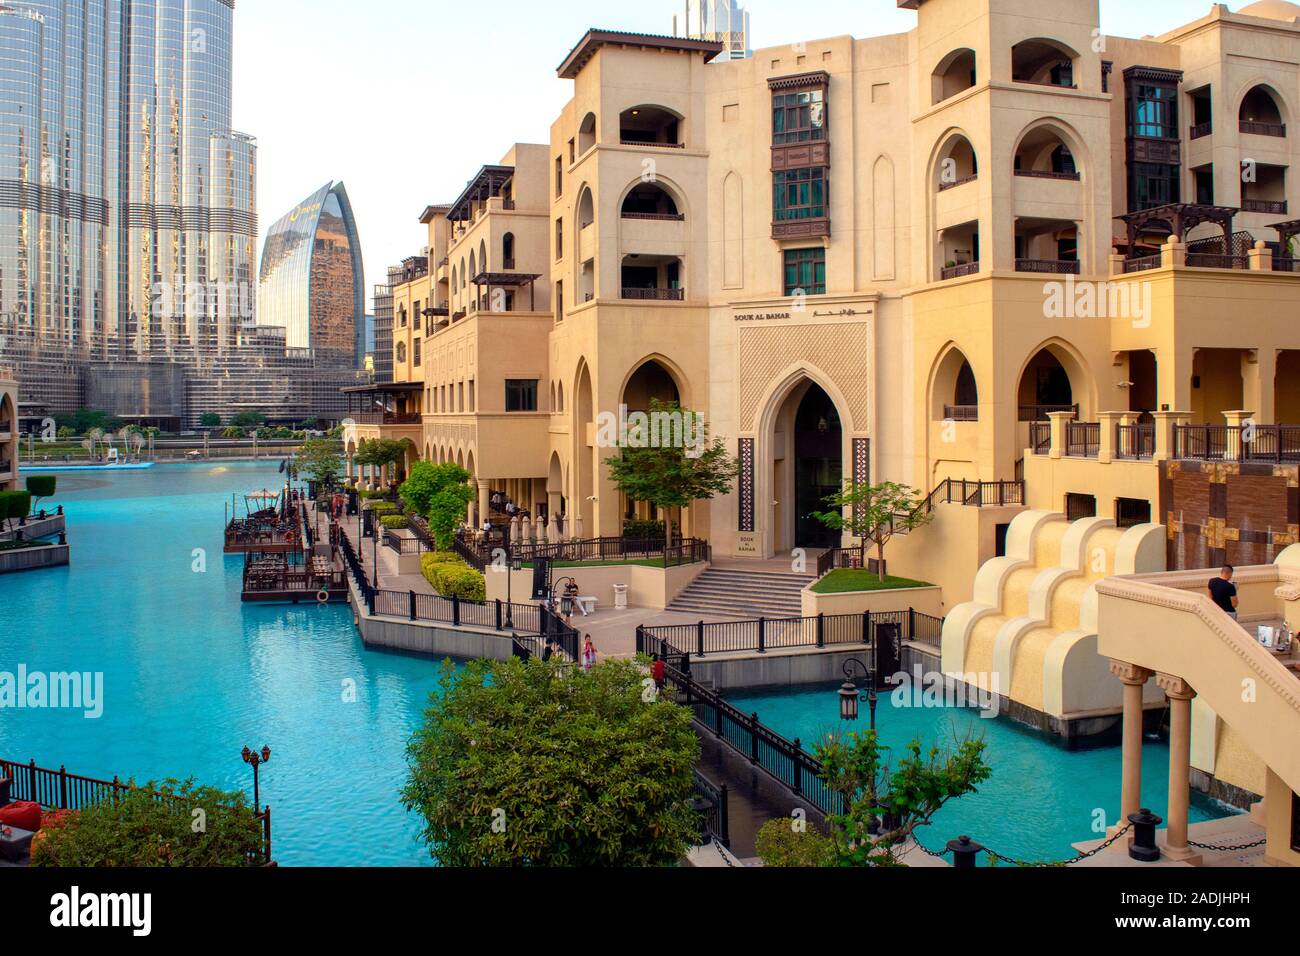 Dubaï / Emirats Arabes Unis - 5 novembre, 2019 : Souk Al Bahar avec bord de l'eau et des restaurants. Belle vue sur Dubai downtown district avec restaurants et souk. Banque D'Images